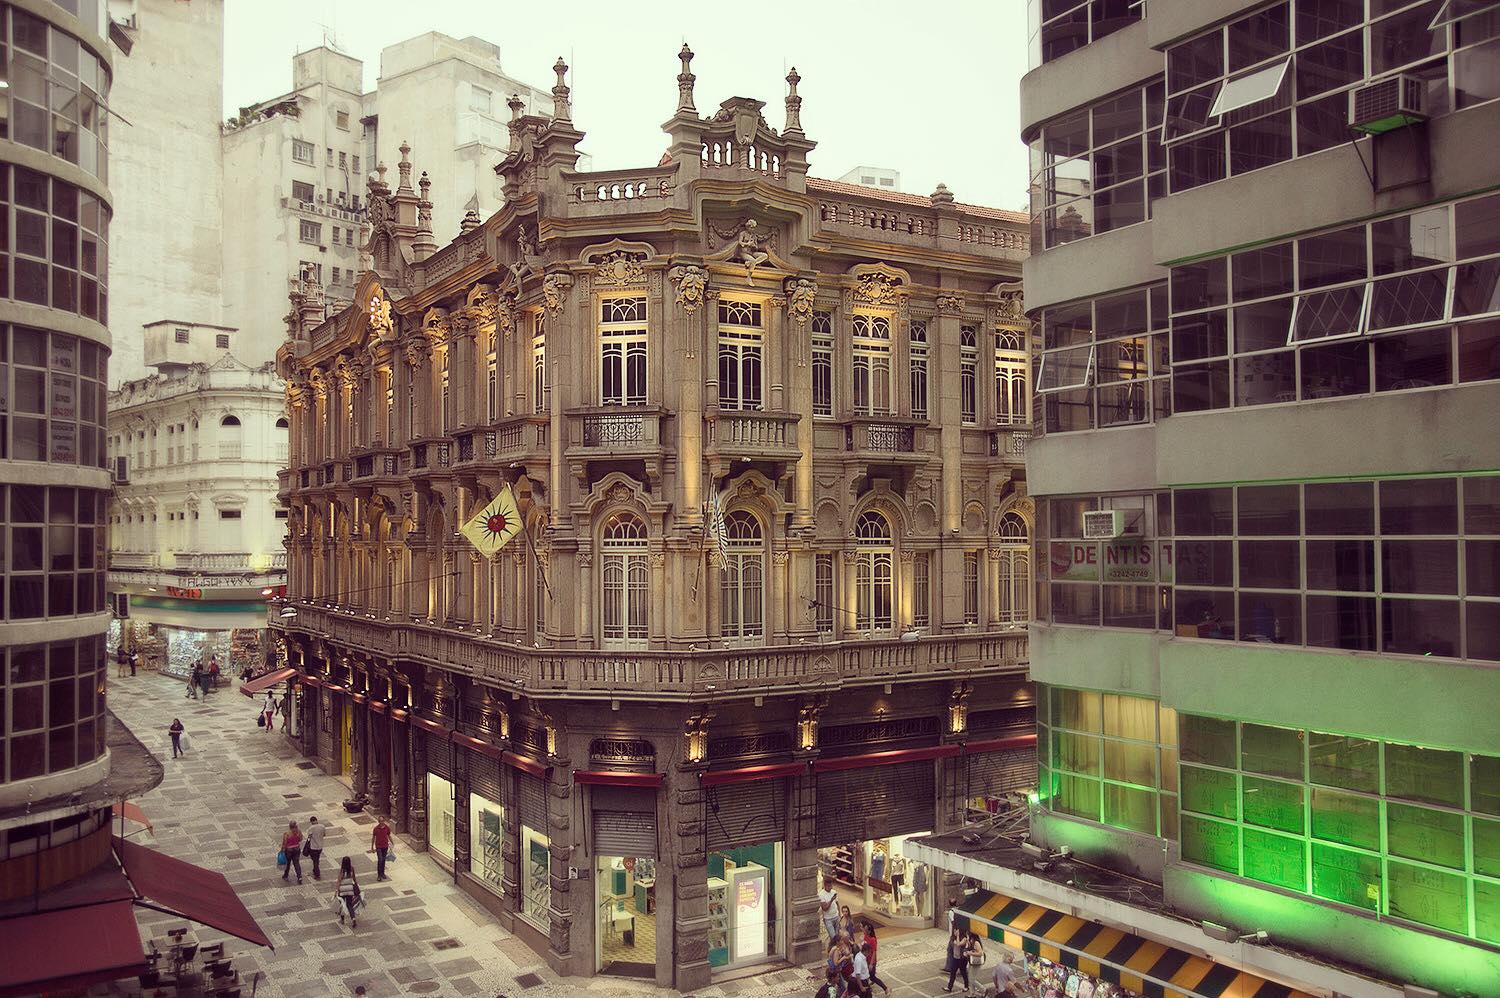 23674902 2012266989055579 3842182829860899238 o - Casa de Francisca, a menor casa de shows de São Paulo é brilhante!